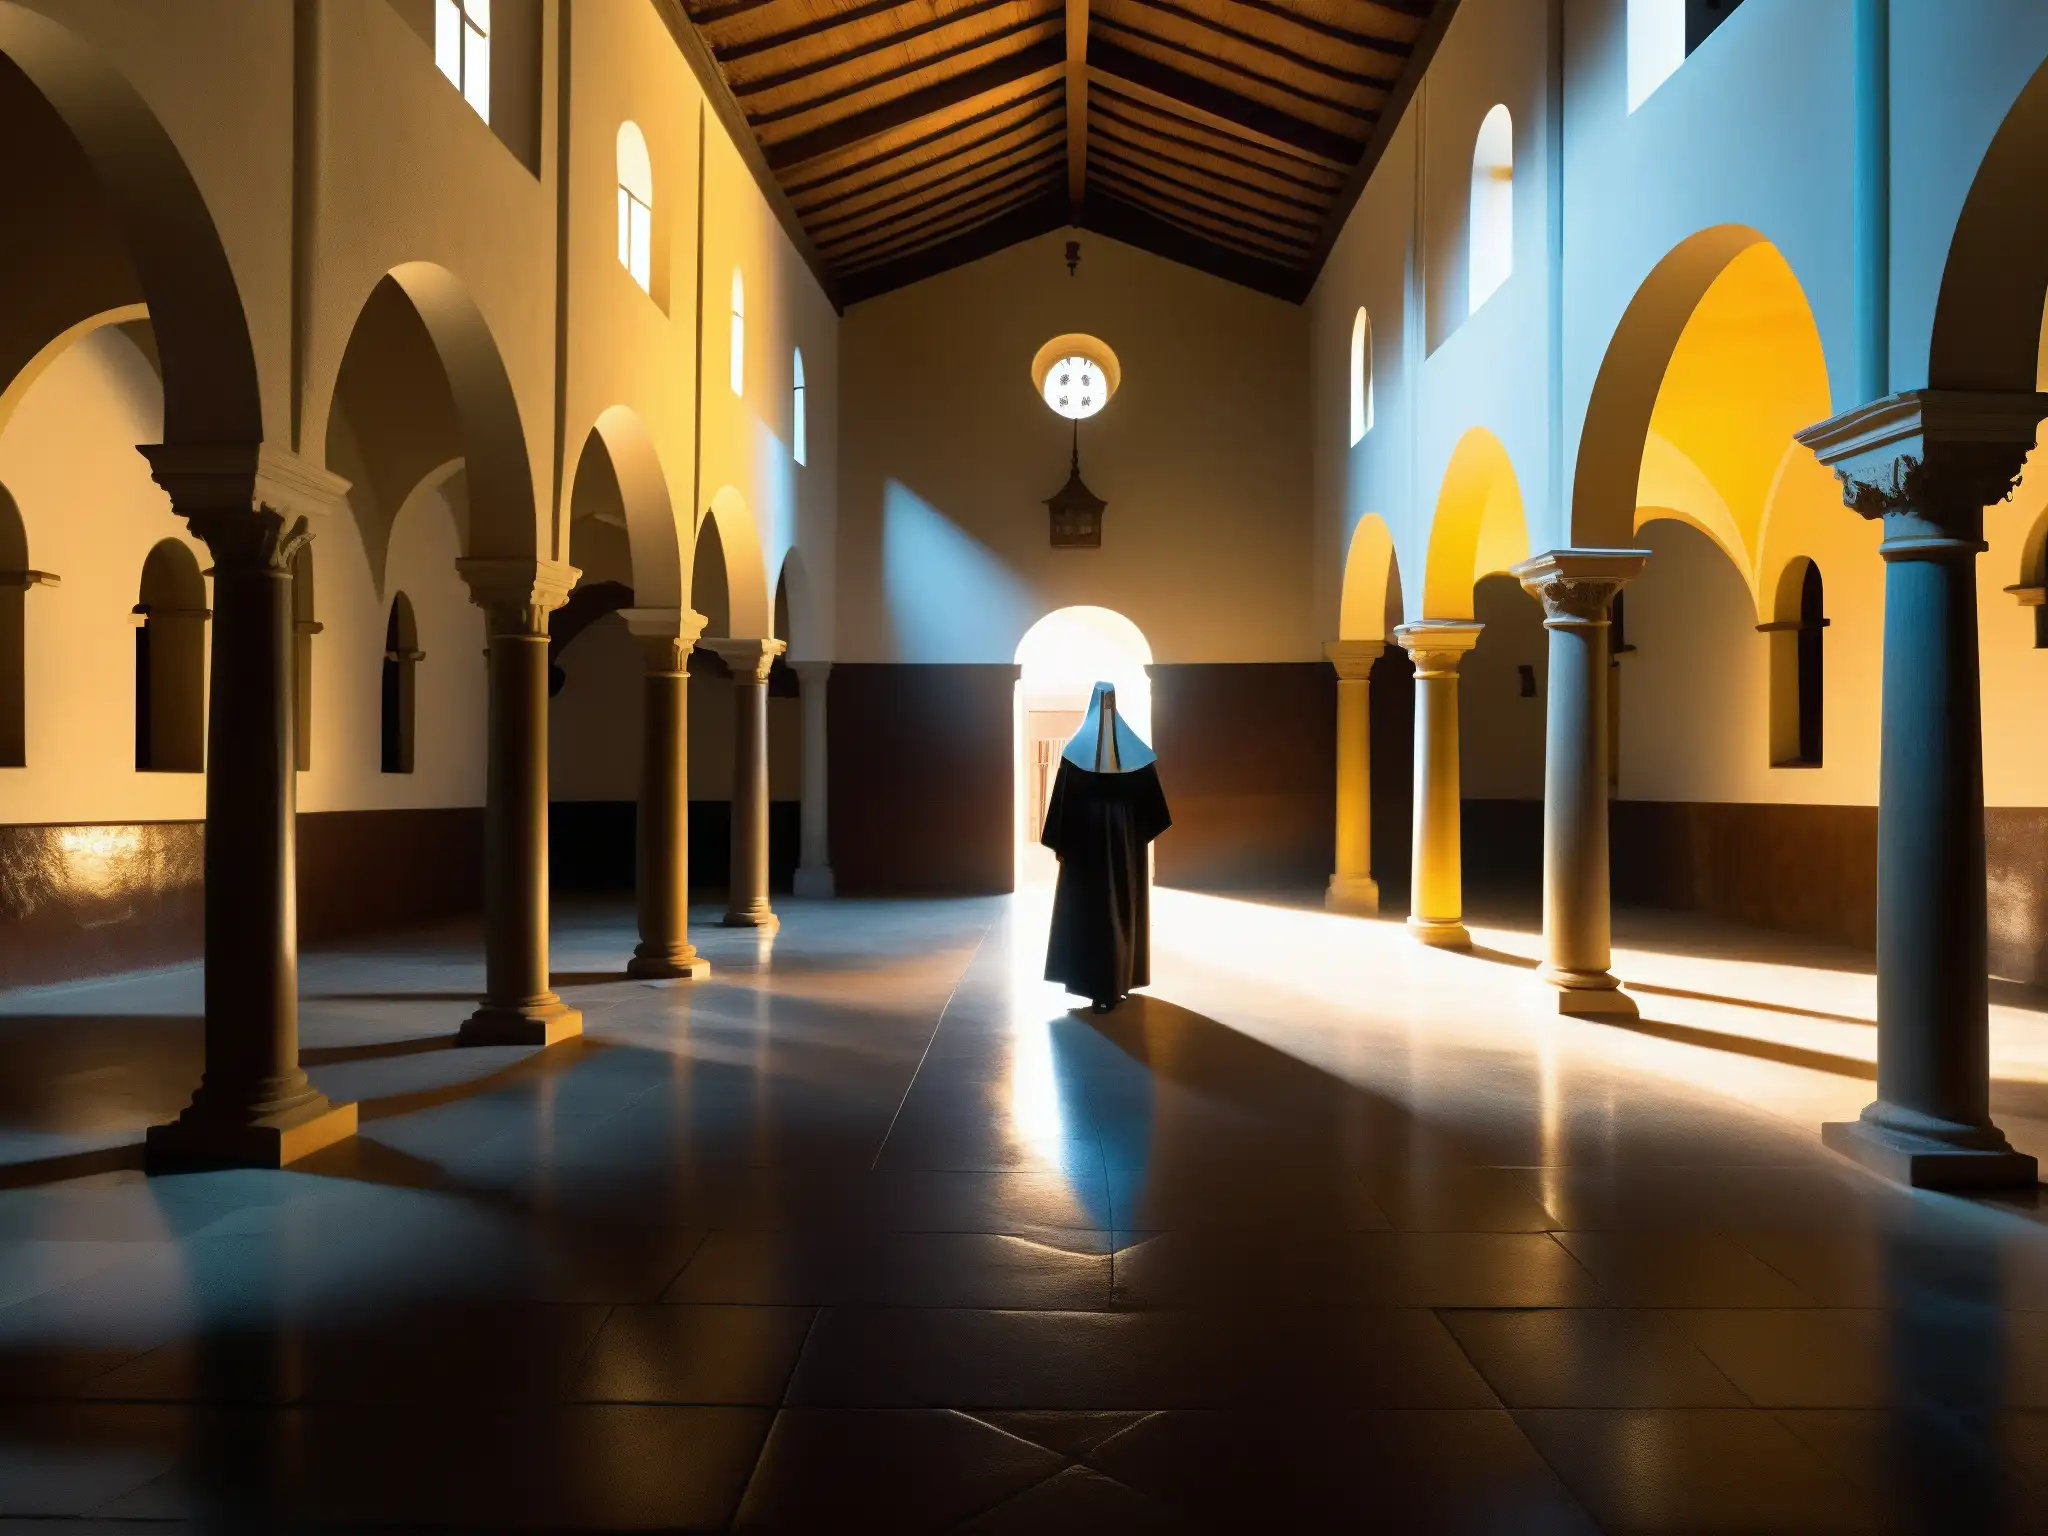 Imagen impactante del interior del Convento de la Concepción, resaltando la atmósfera misteriosa y la arquitectura histórica